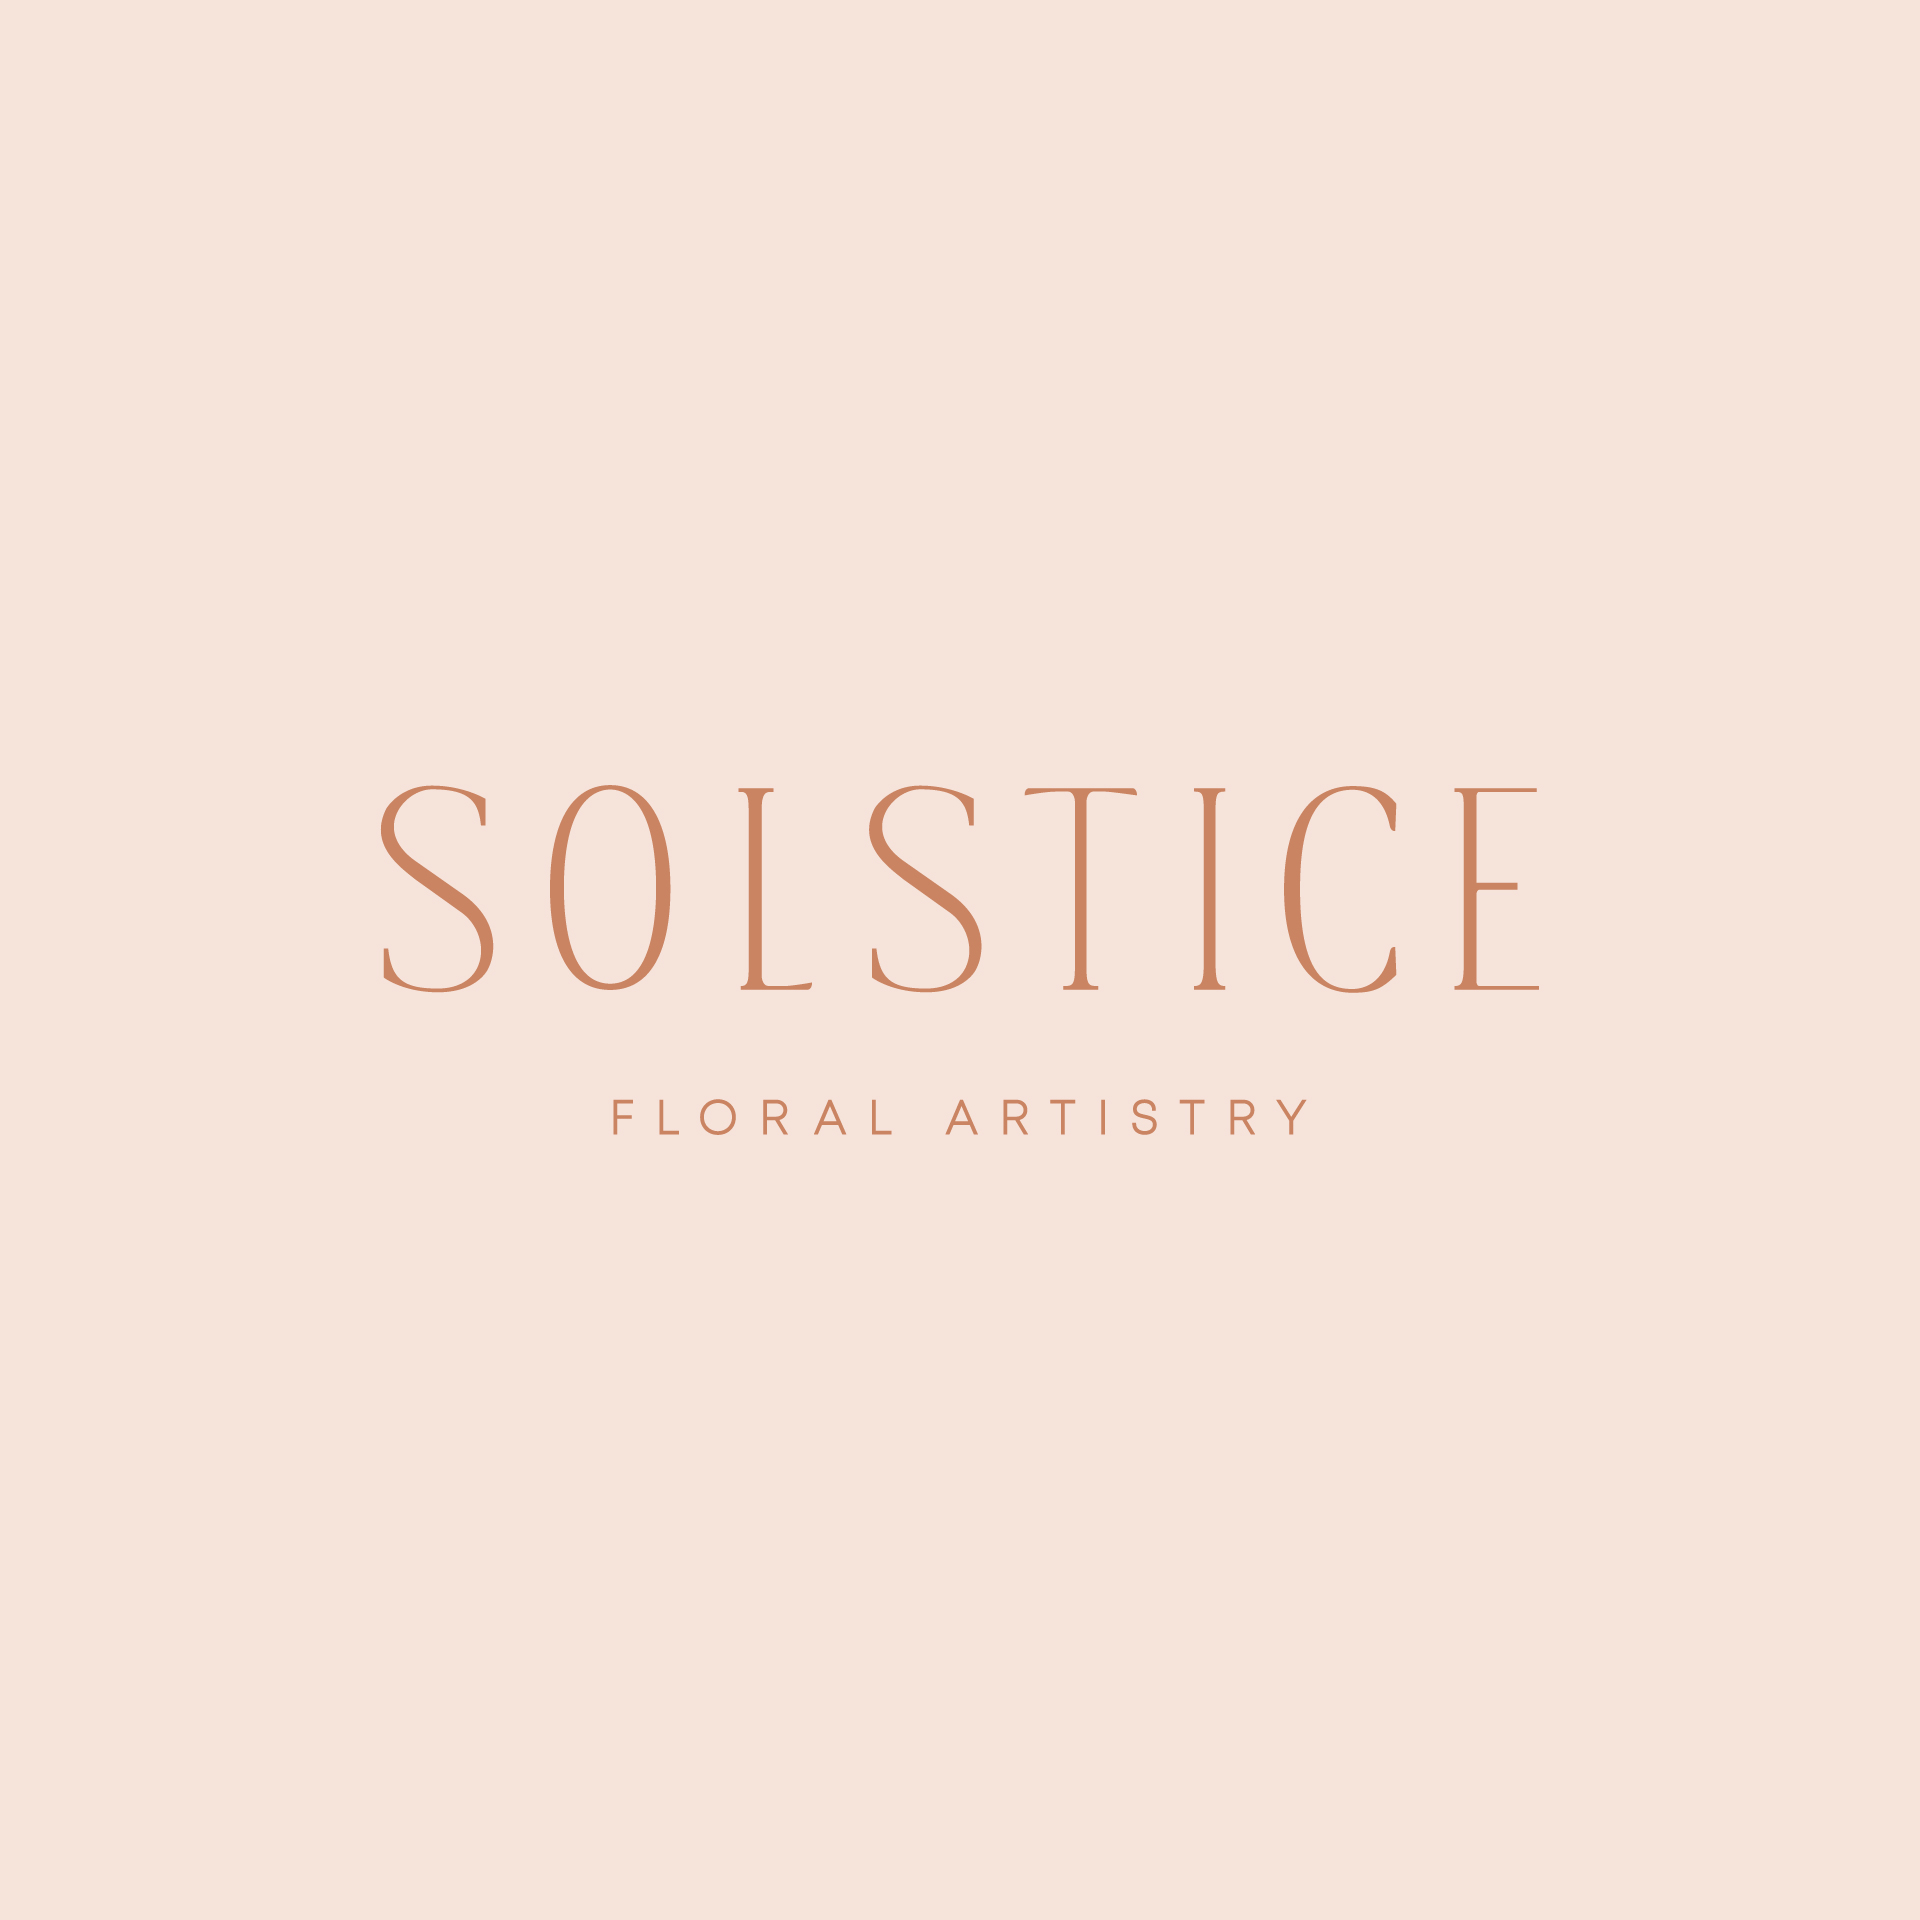 Florist rebrand - primary logo design for Solstice Floral